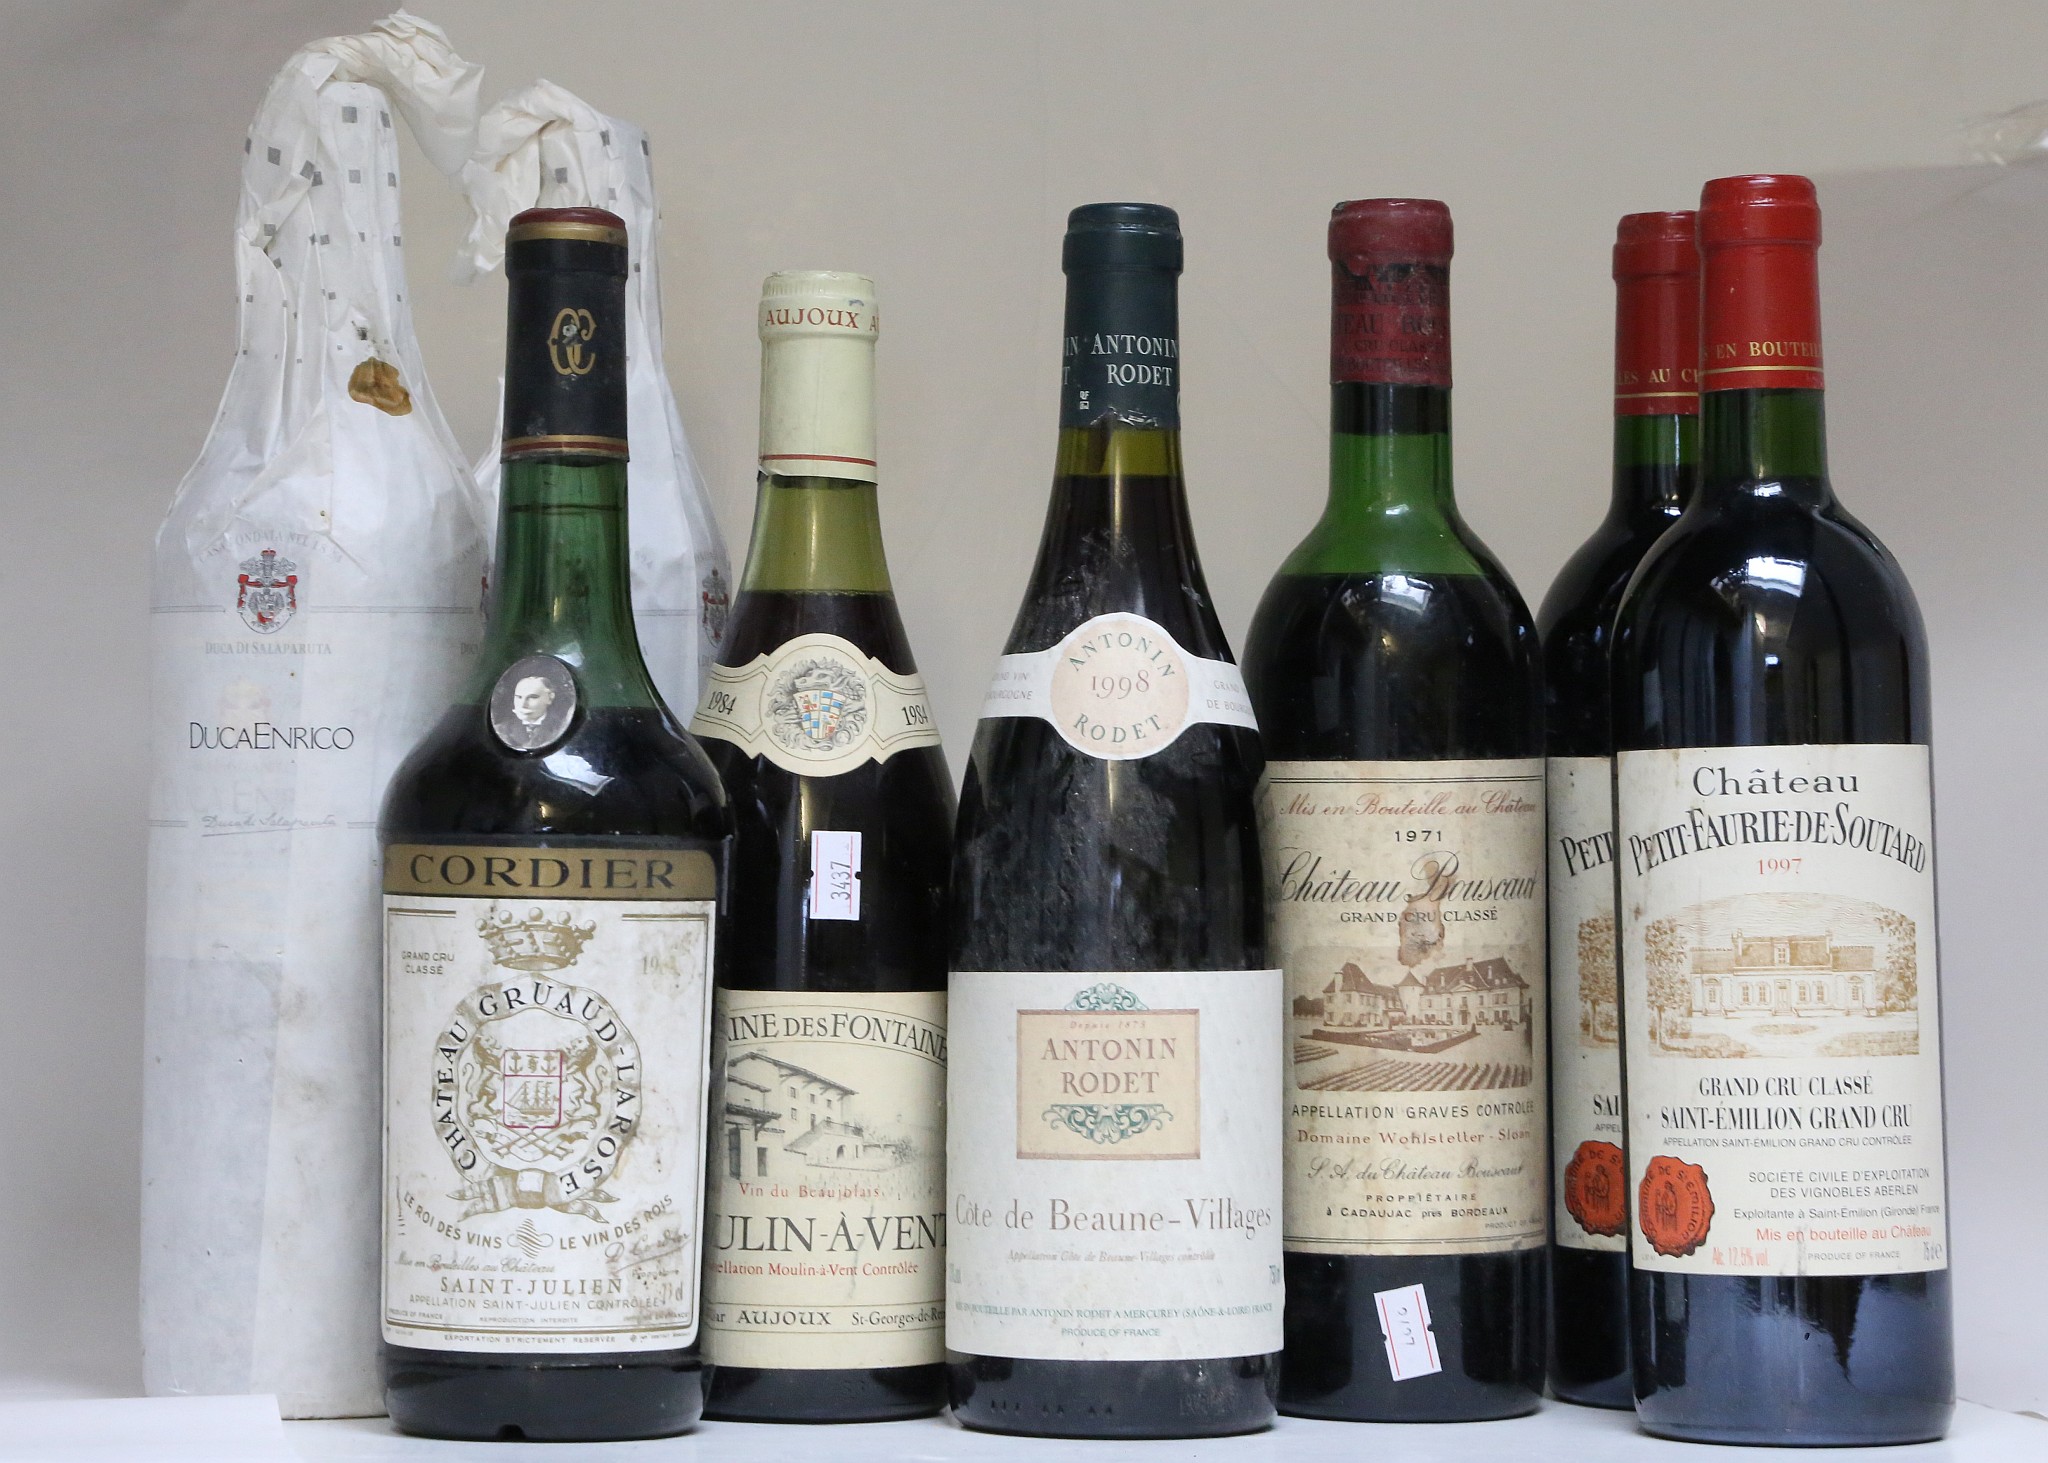 Wine - Moulin-a-vent 1984,Gruad Larose 1967, Chateau Bouscaut 1971, Antonin Rodet Cote de beaune